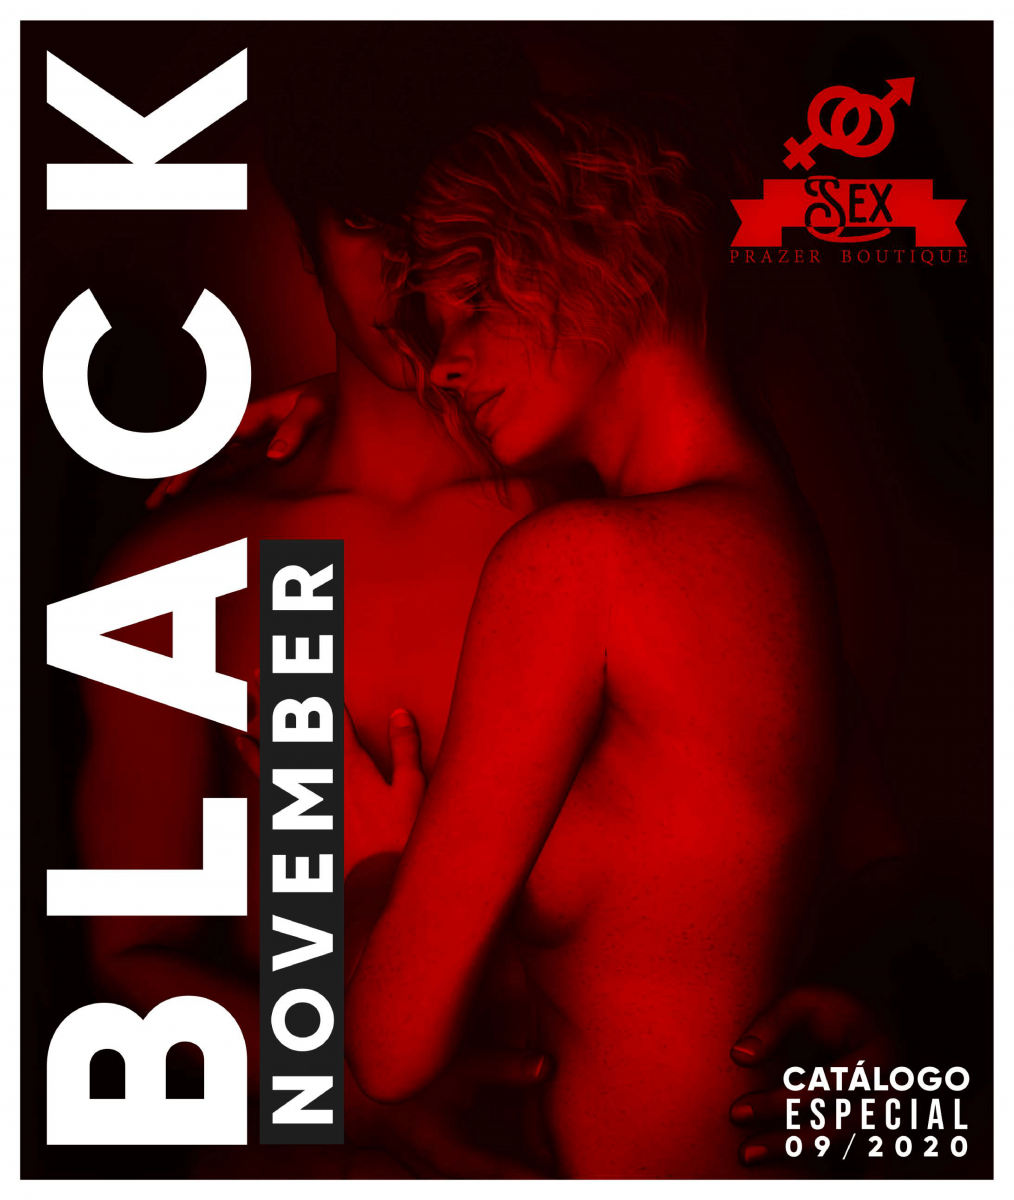 CATÁLOGO BLACK NOVEMBER SEX PRAZER BOUTIQUE-1